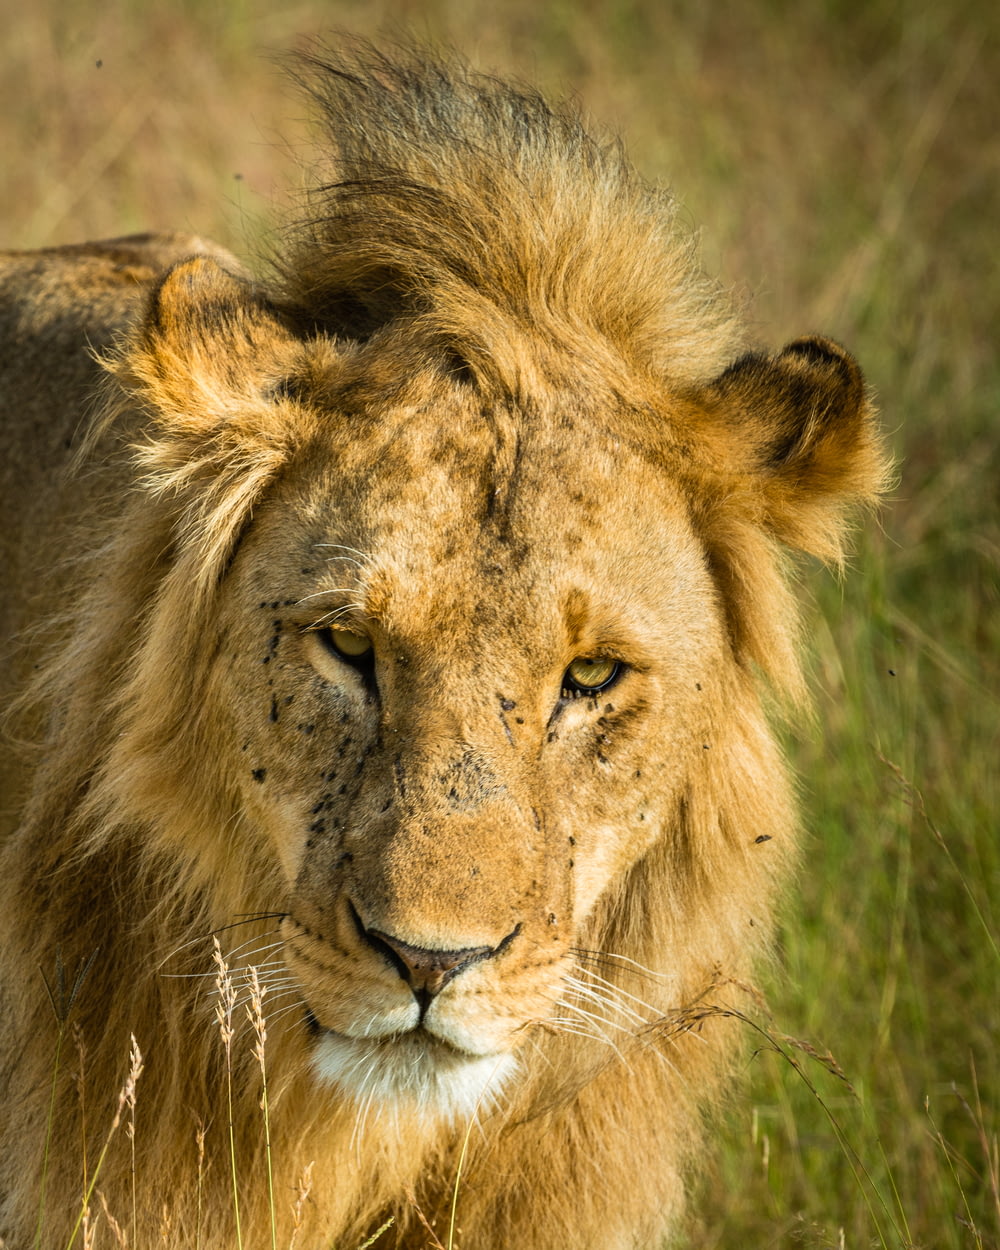 Selektive Fokusfotografie des Braunen Löwen in der Nähe von Gräsern